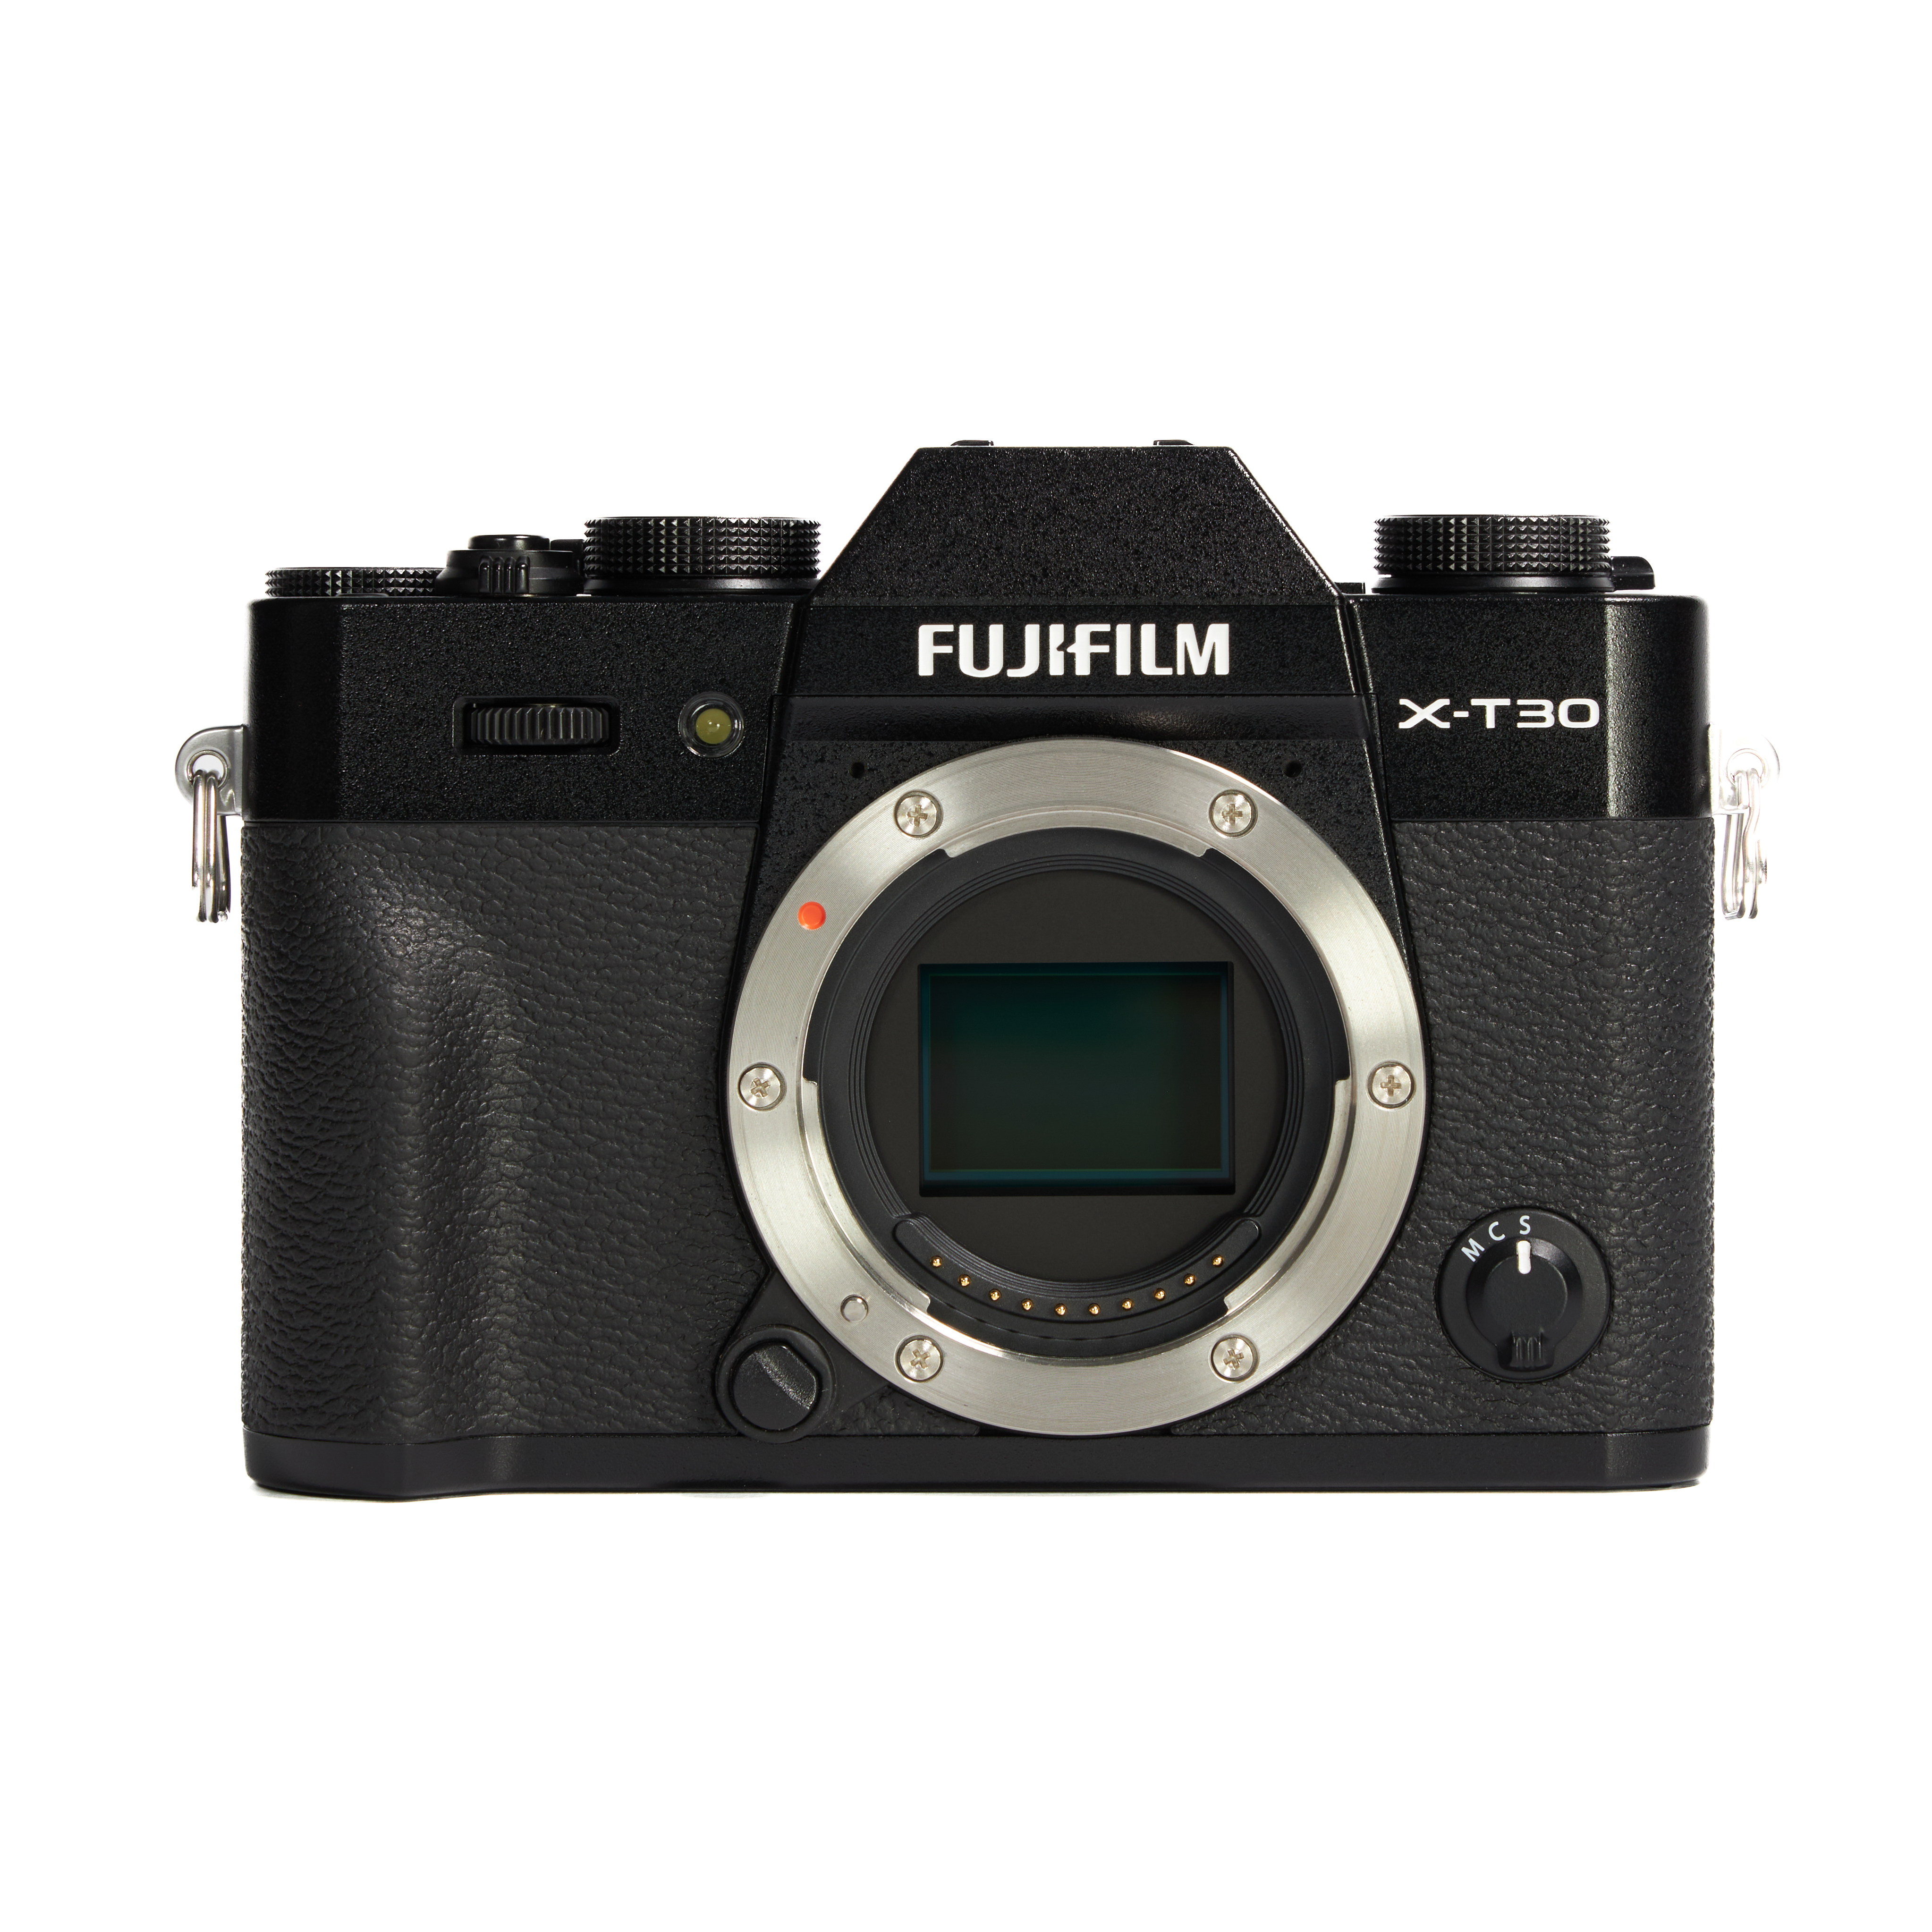 FUJIFILM（富士フイルム）のミラーレス一眼カメラを中古で買う方法 